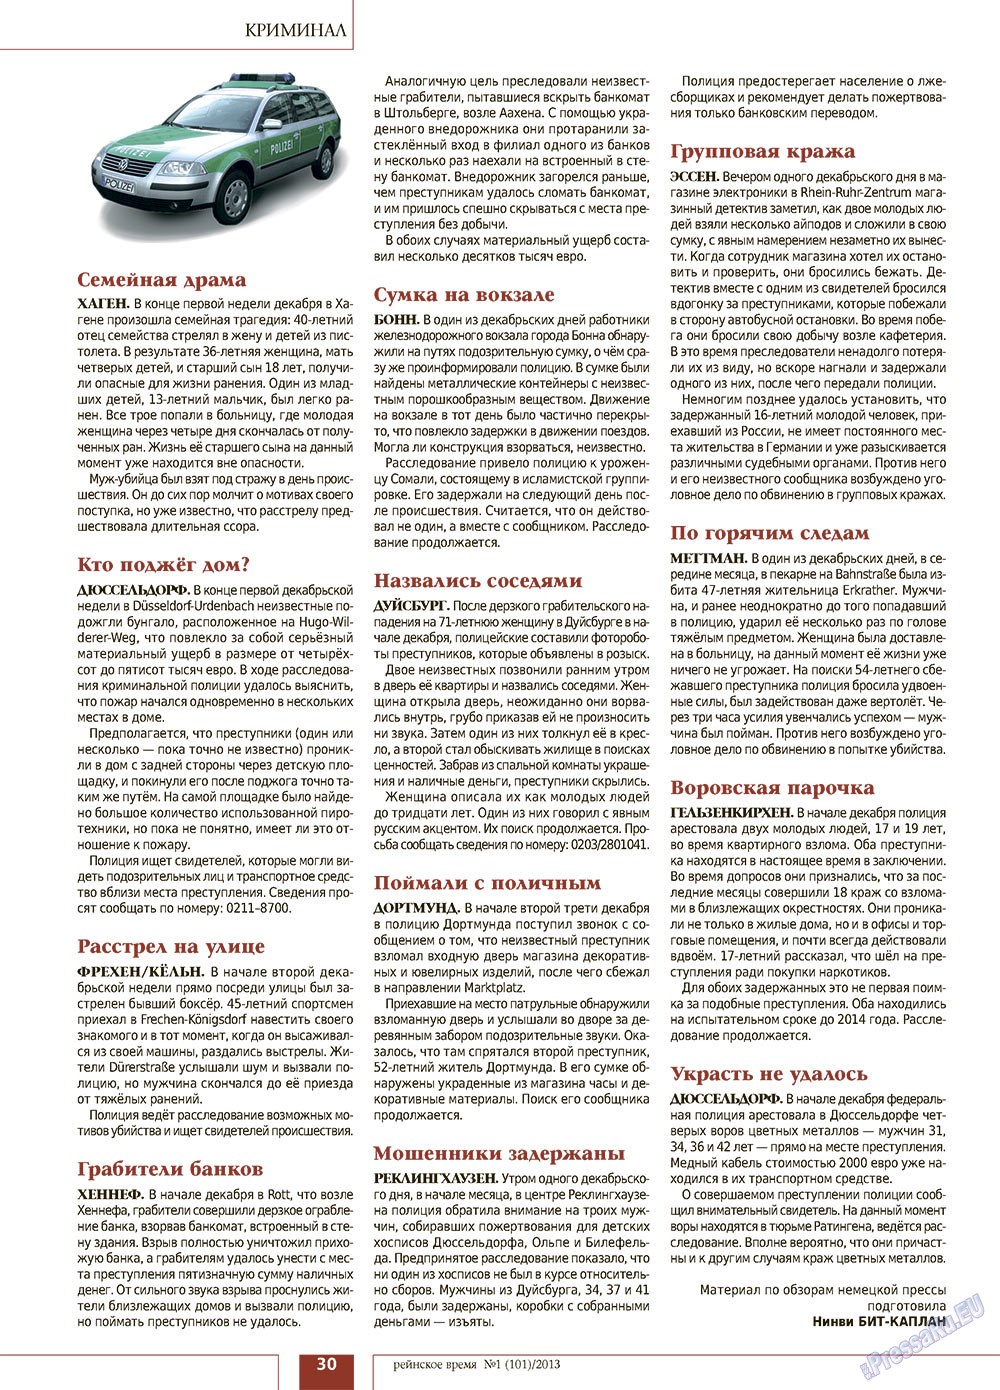 Рейнское время (журнал). 2013 год, номер 1, стр. 30